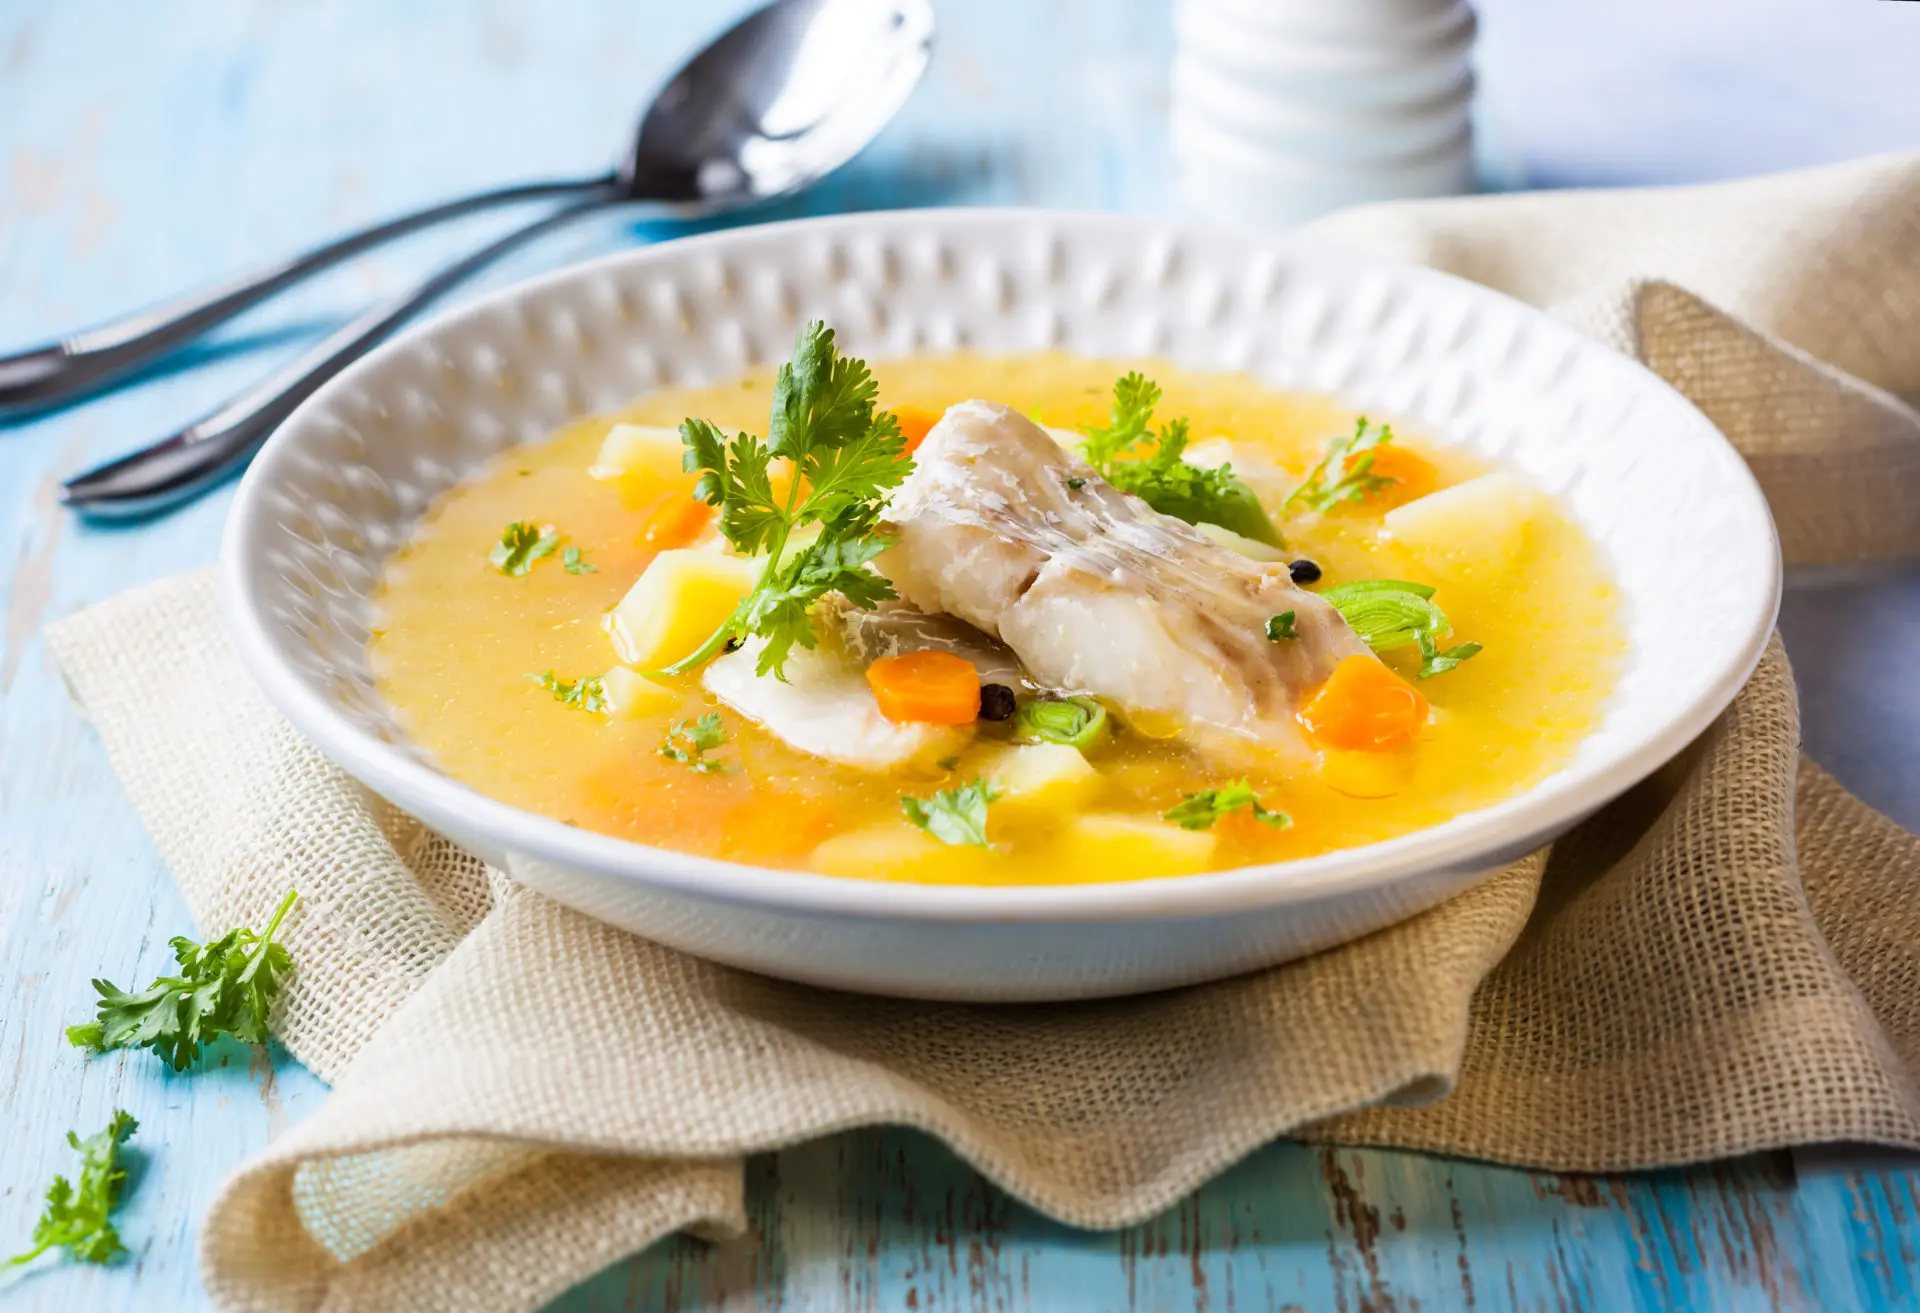 Soupe de poisson (fish soup)